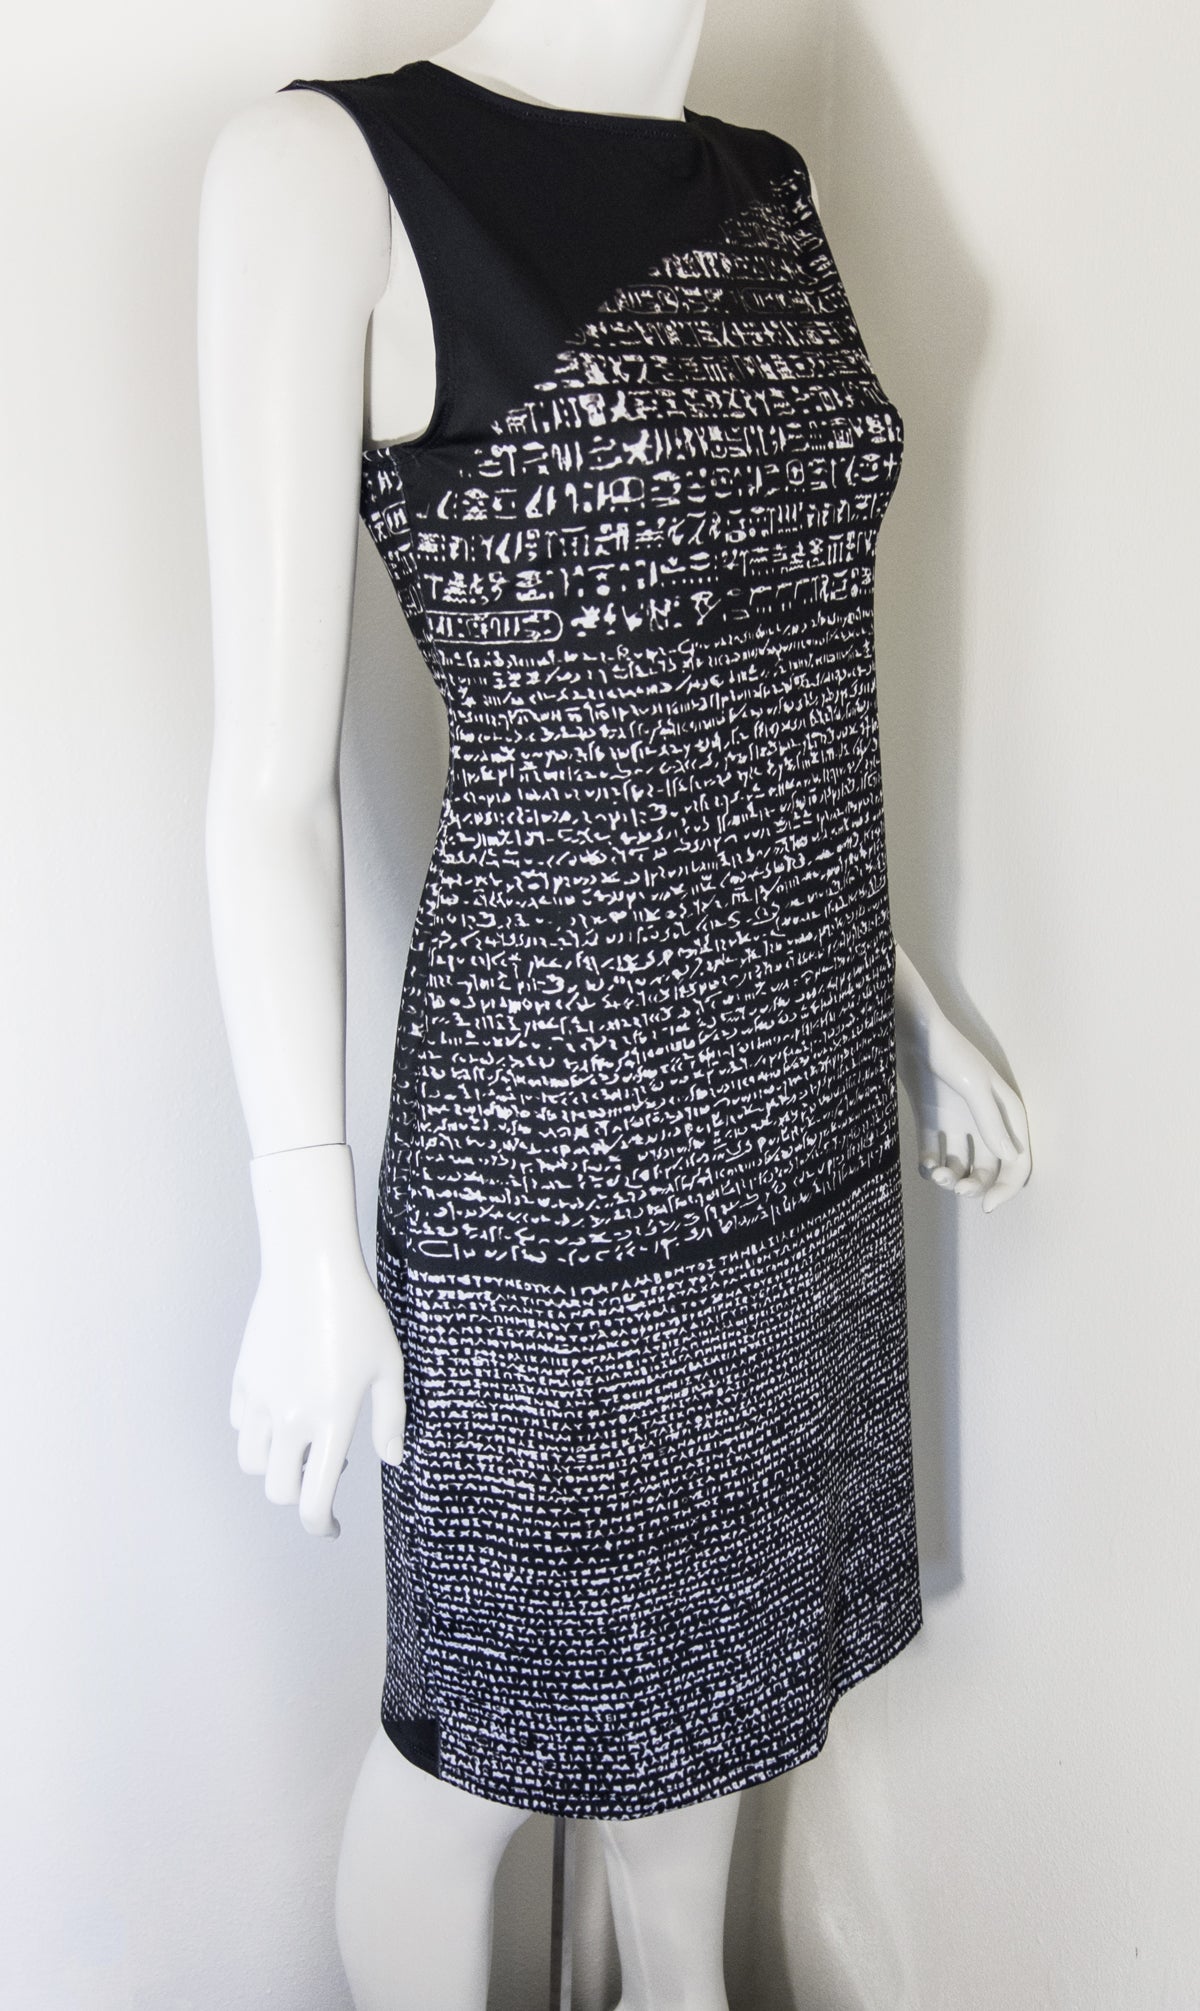 Shenova Fashion  Rosetta Stone Dress